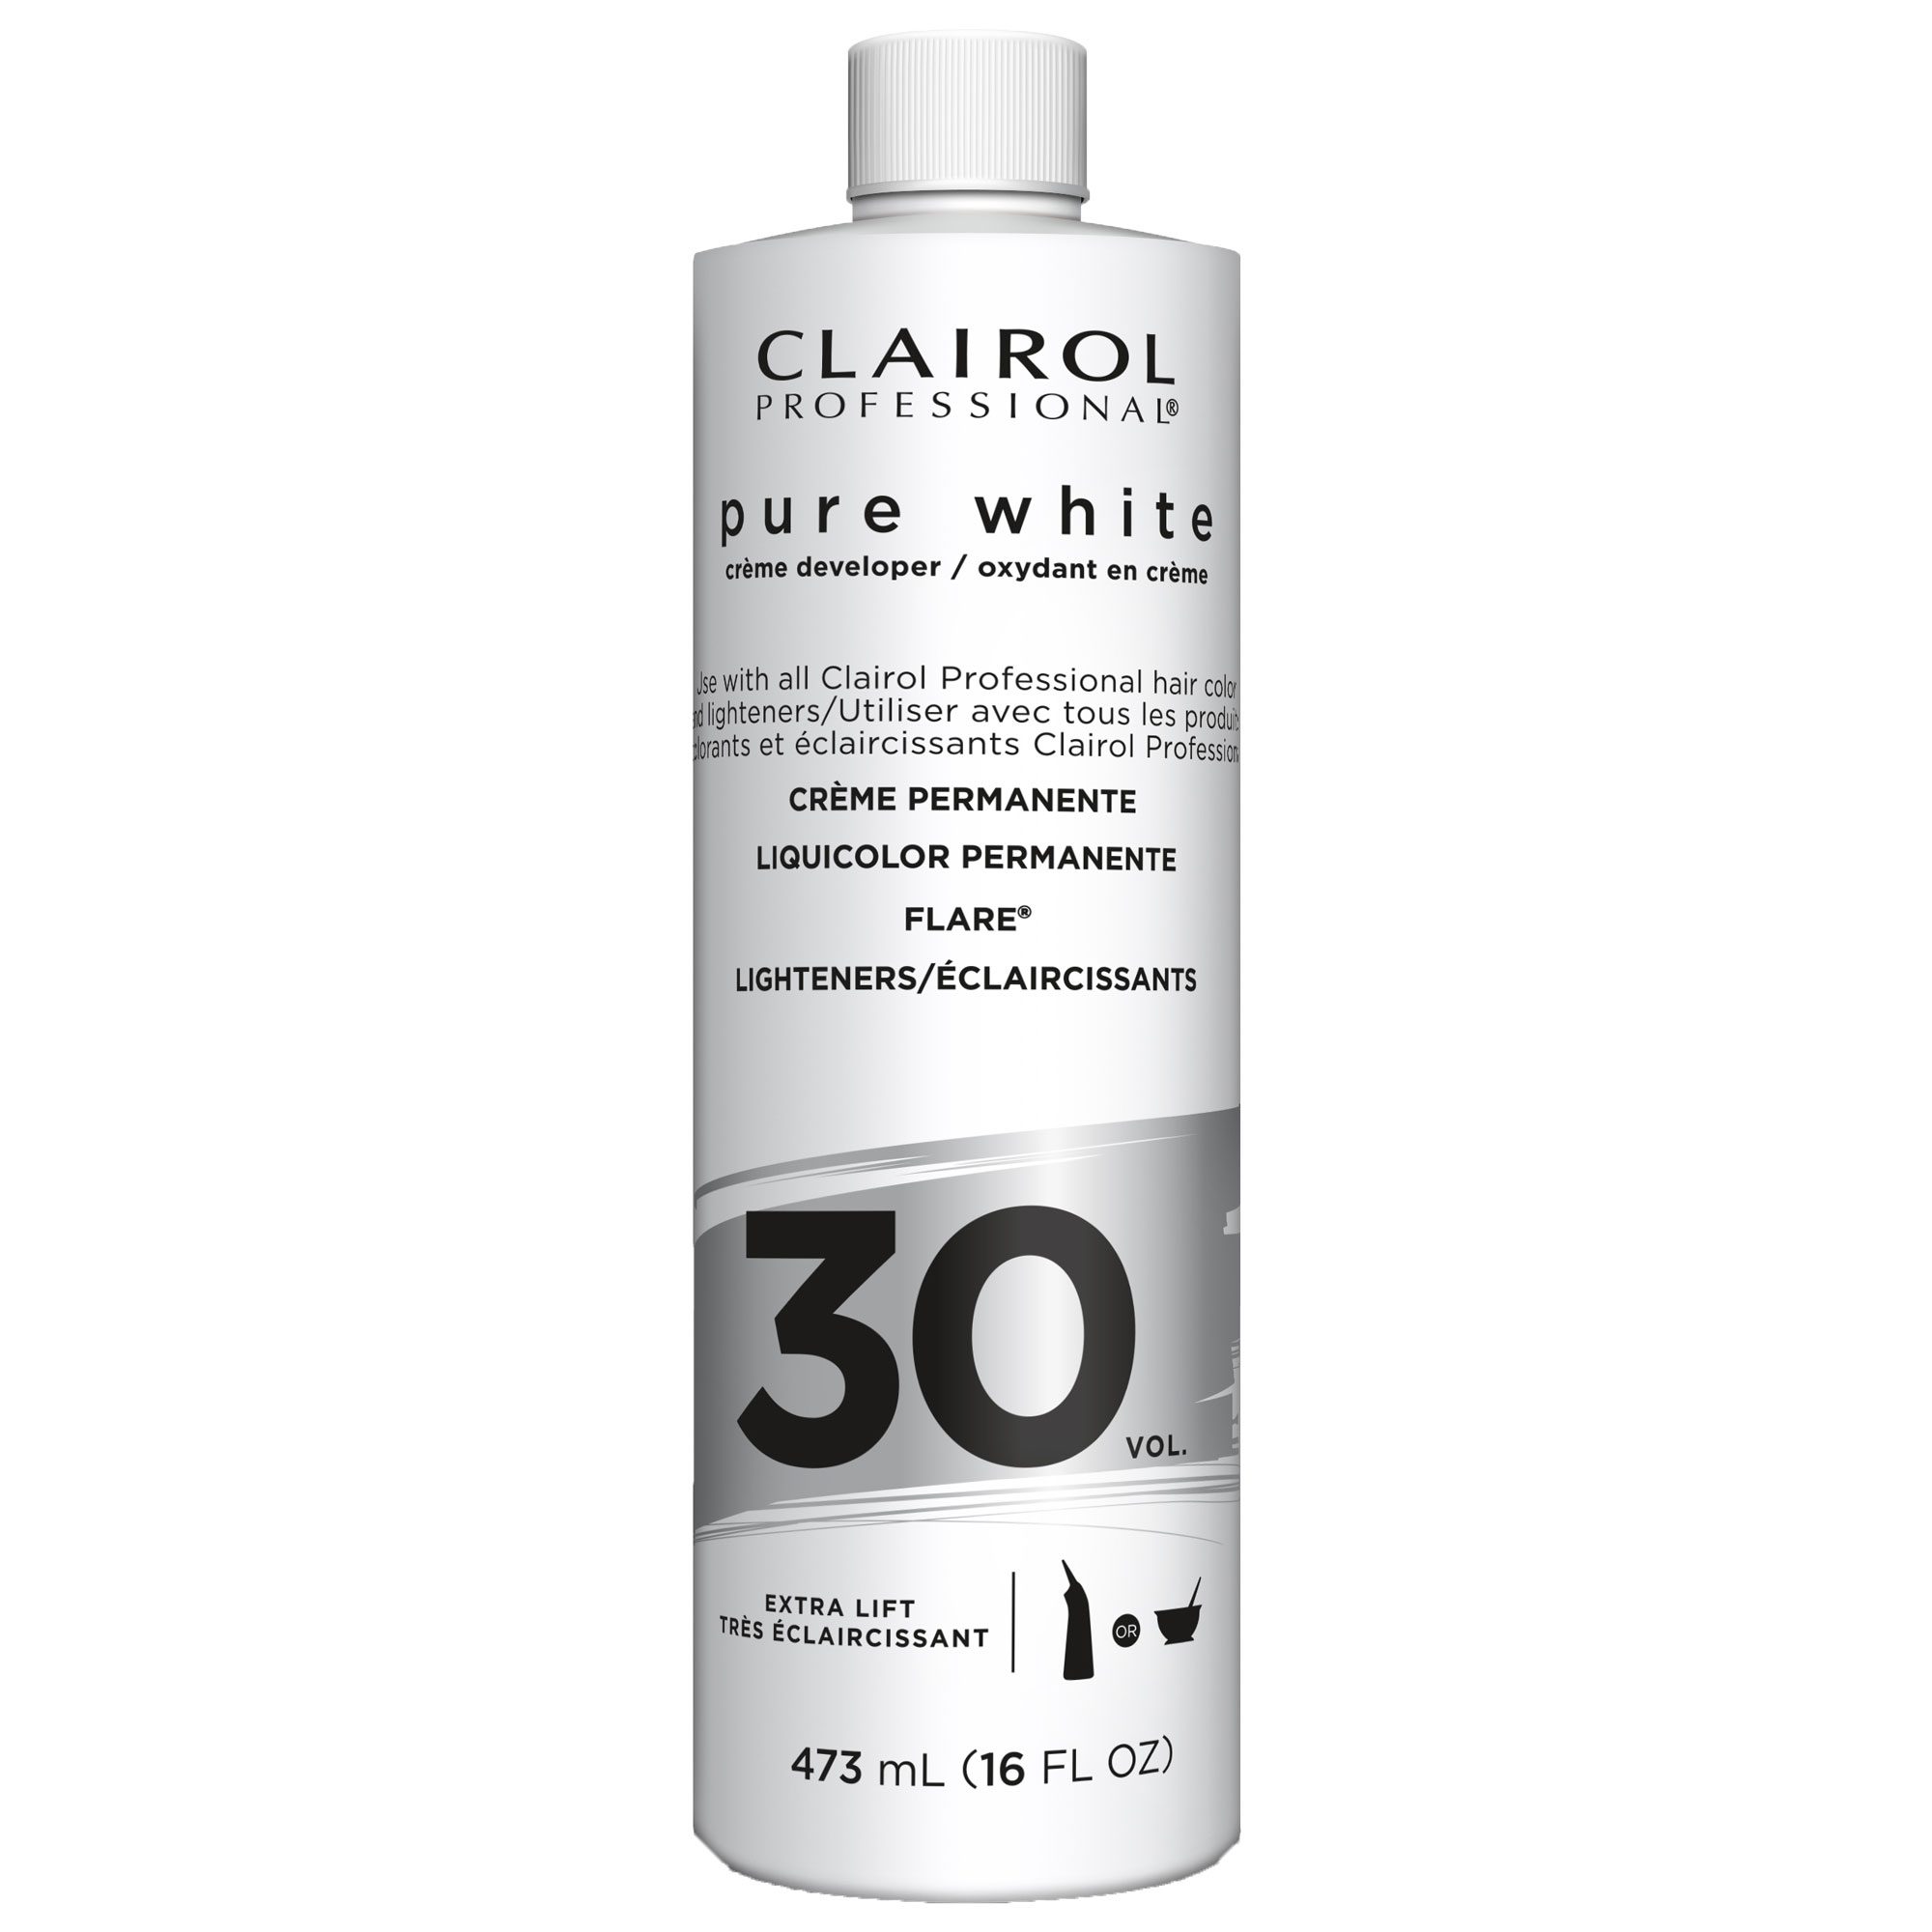 Clairol Pure White 30 Vol Creme Developer